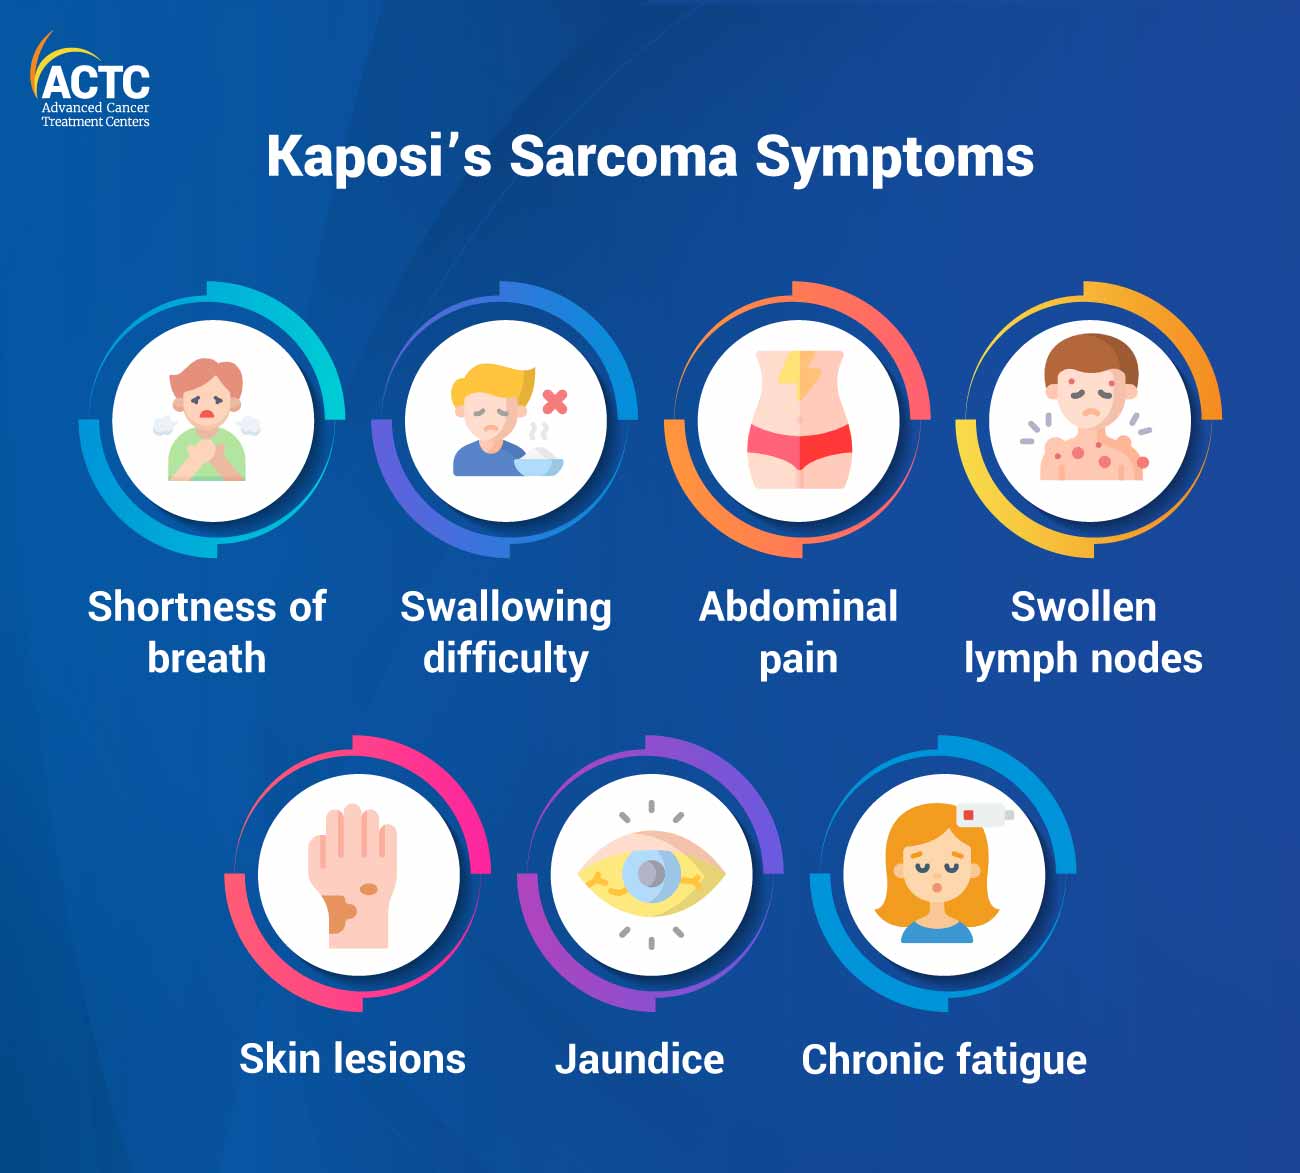 Kaposi's Sarcoma Symptoms